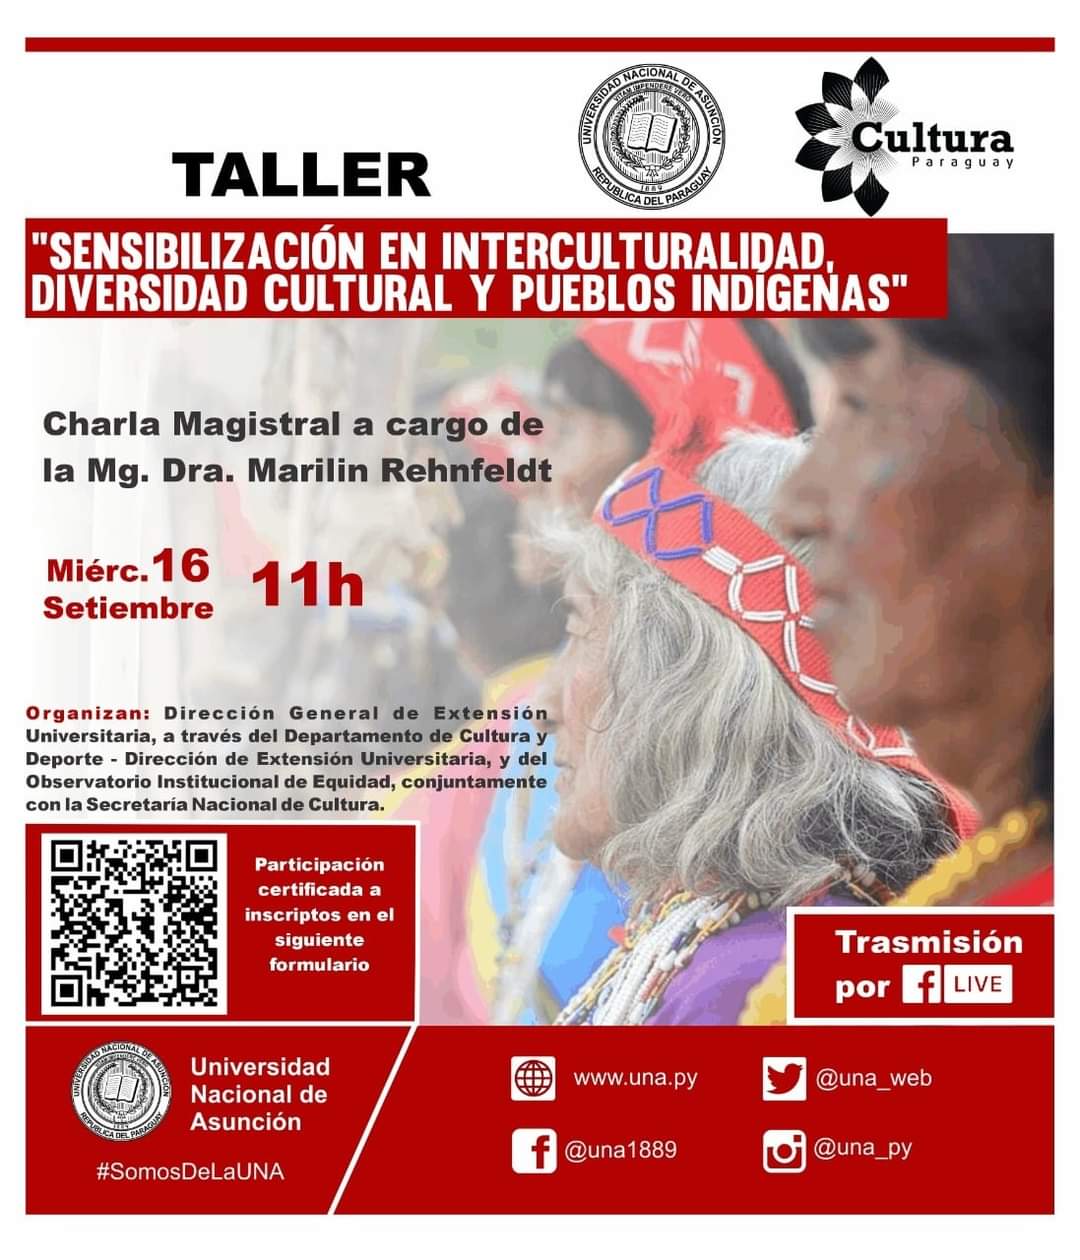 Charla Magistral de la Mg. Dra Marilin Rehnfeldt dará apertura a talleres de Sensibilización  en Interculturalidad  y Pueblos Indígenas imagen